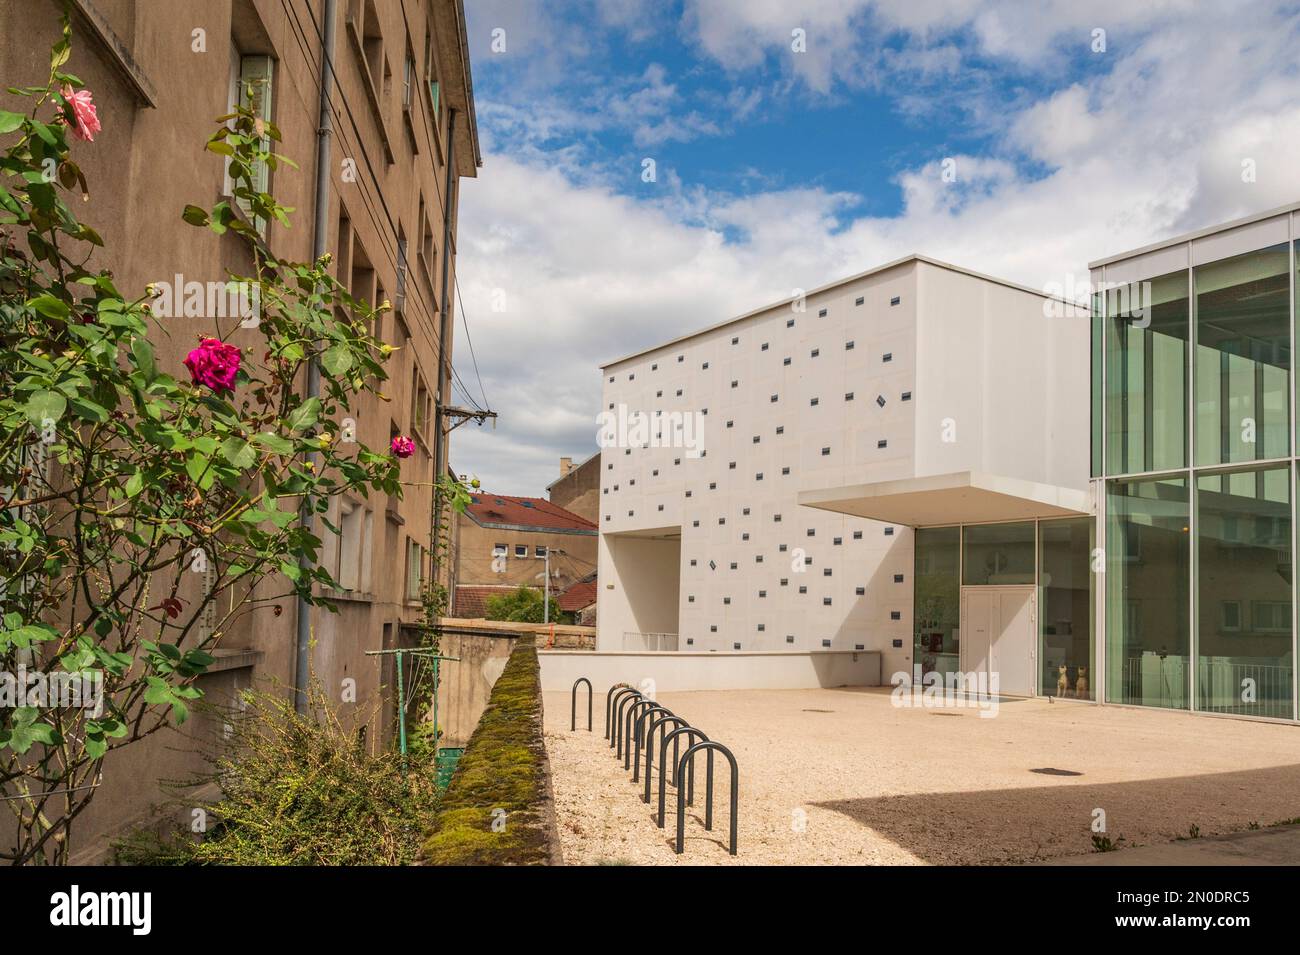 Le Consortium, le centre de l'art contemporain de Dijon, France Banque D'Images